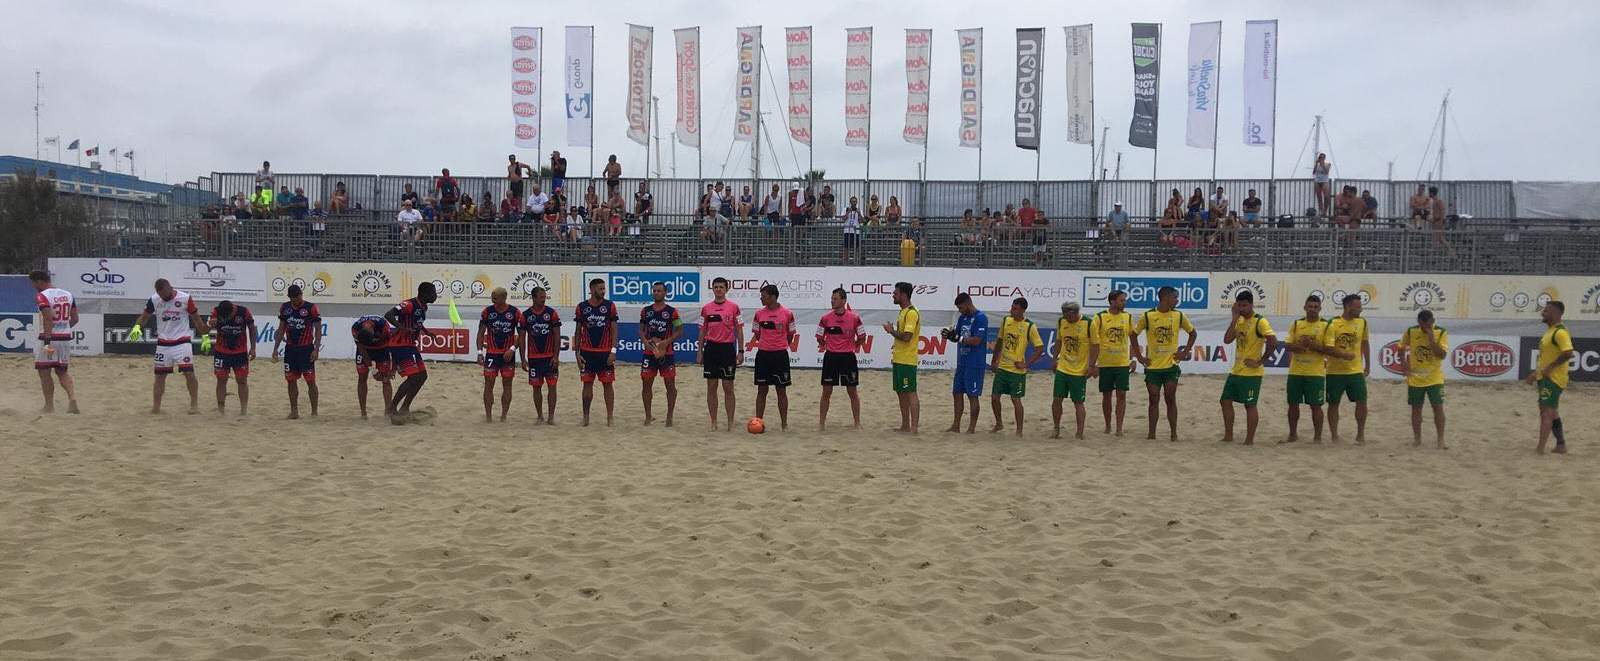 Beach Soccer serie Aon, la Samb perde 4 a 3 contro il Palazzolo